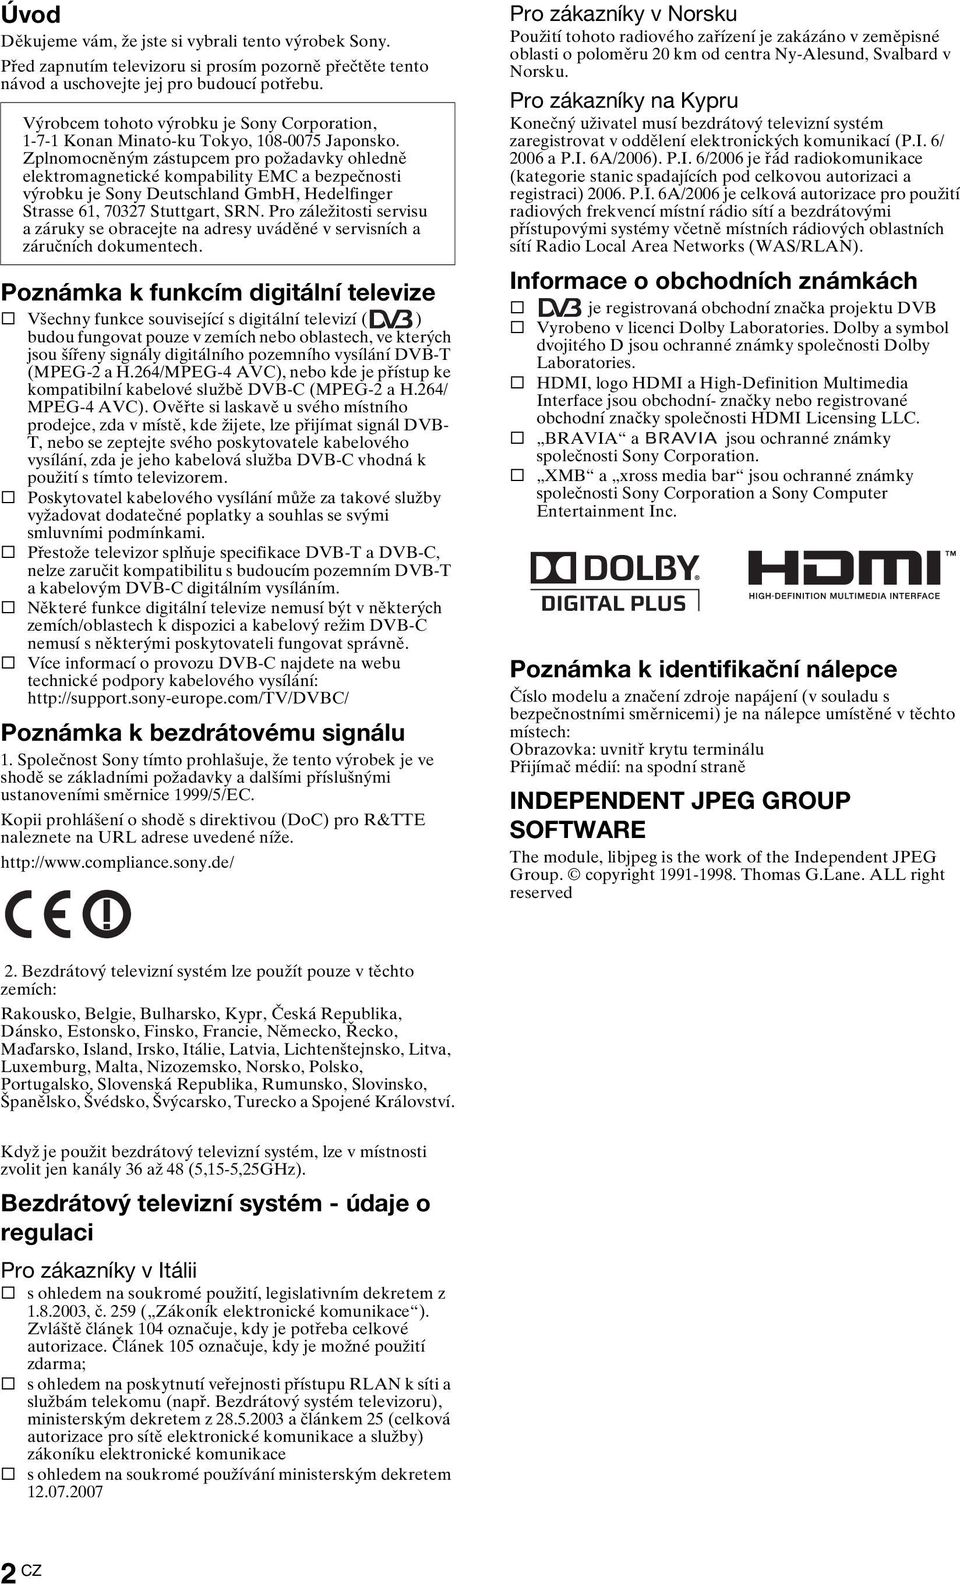 Zplnomocněným zástupcem pro požadavky ohledně elektromagnetické kompability EMC a bezpečnosti výrobku je Sony Deutschland GmbH, Hedelfinger Strasse 61, 70327 Stuttgart, SRN.